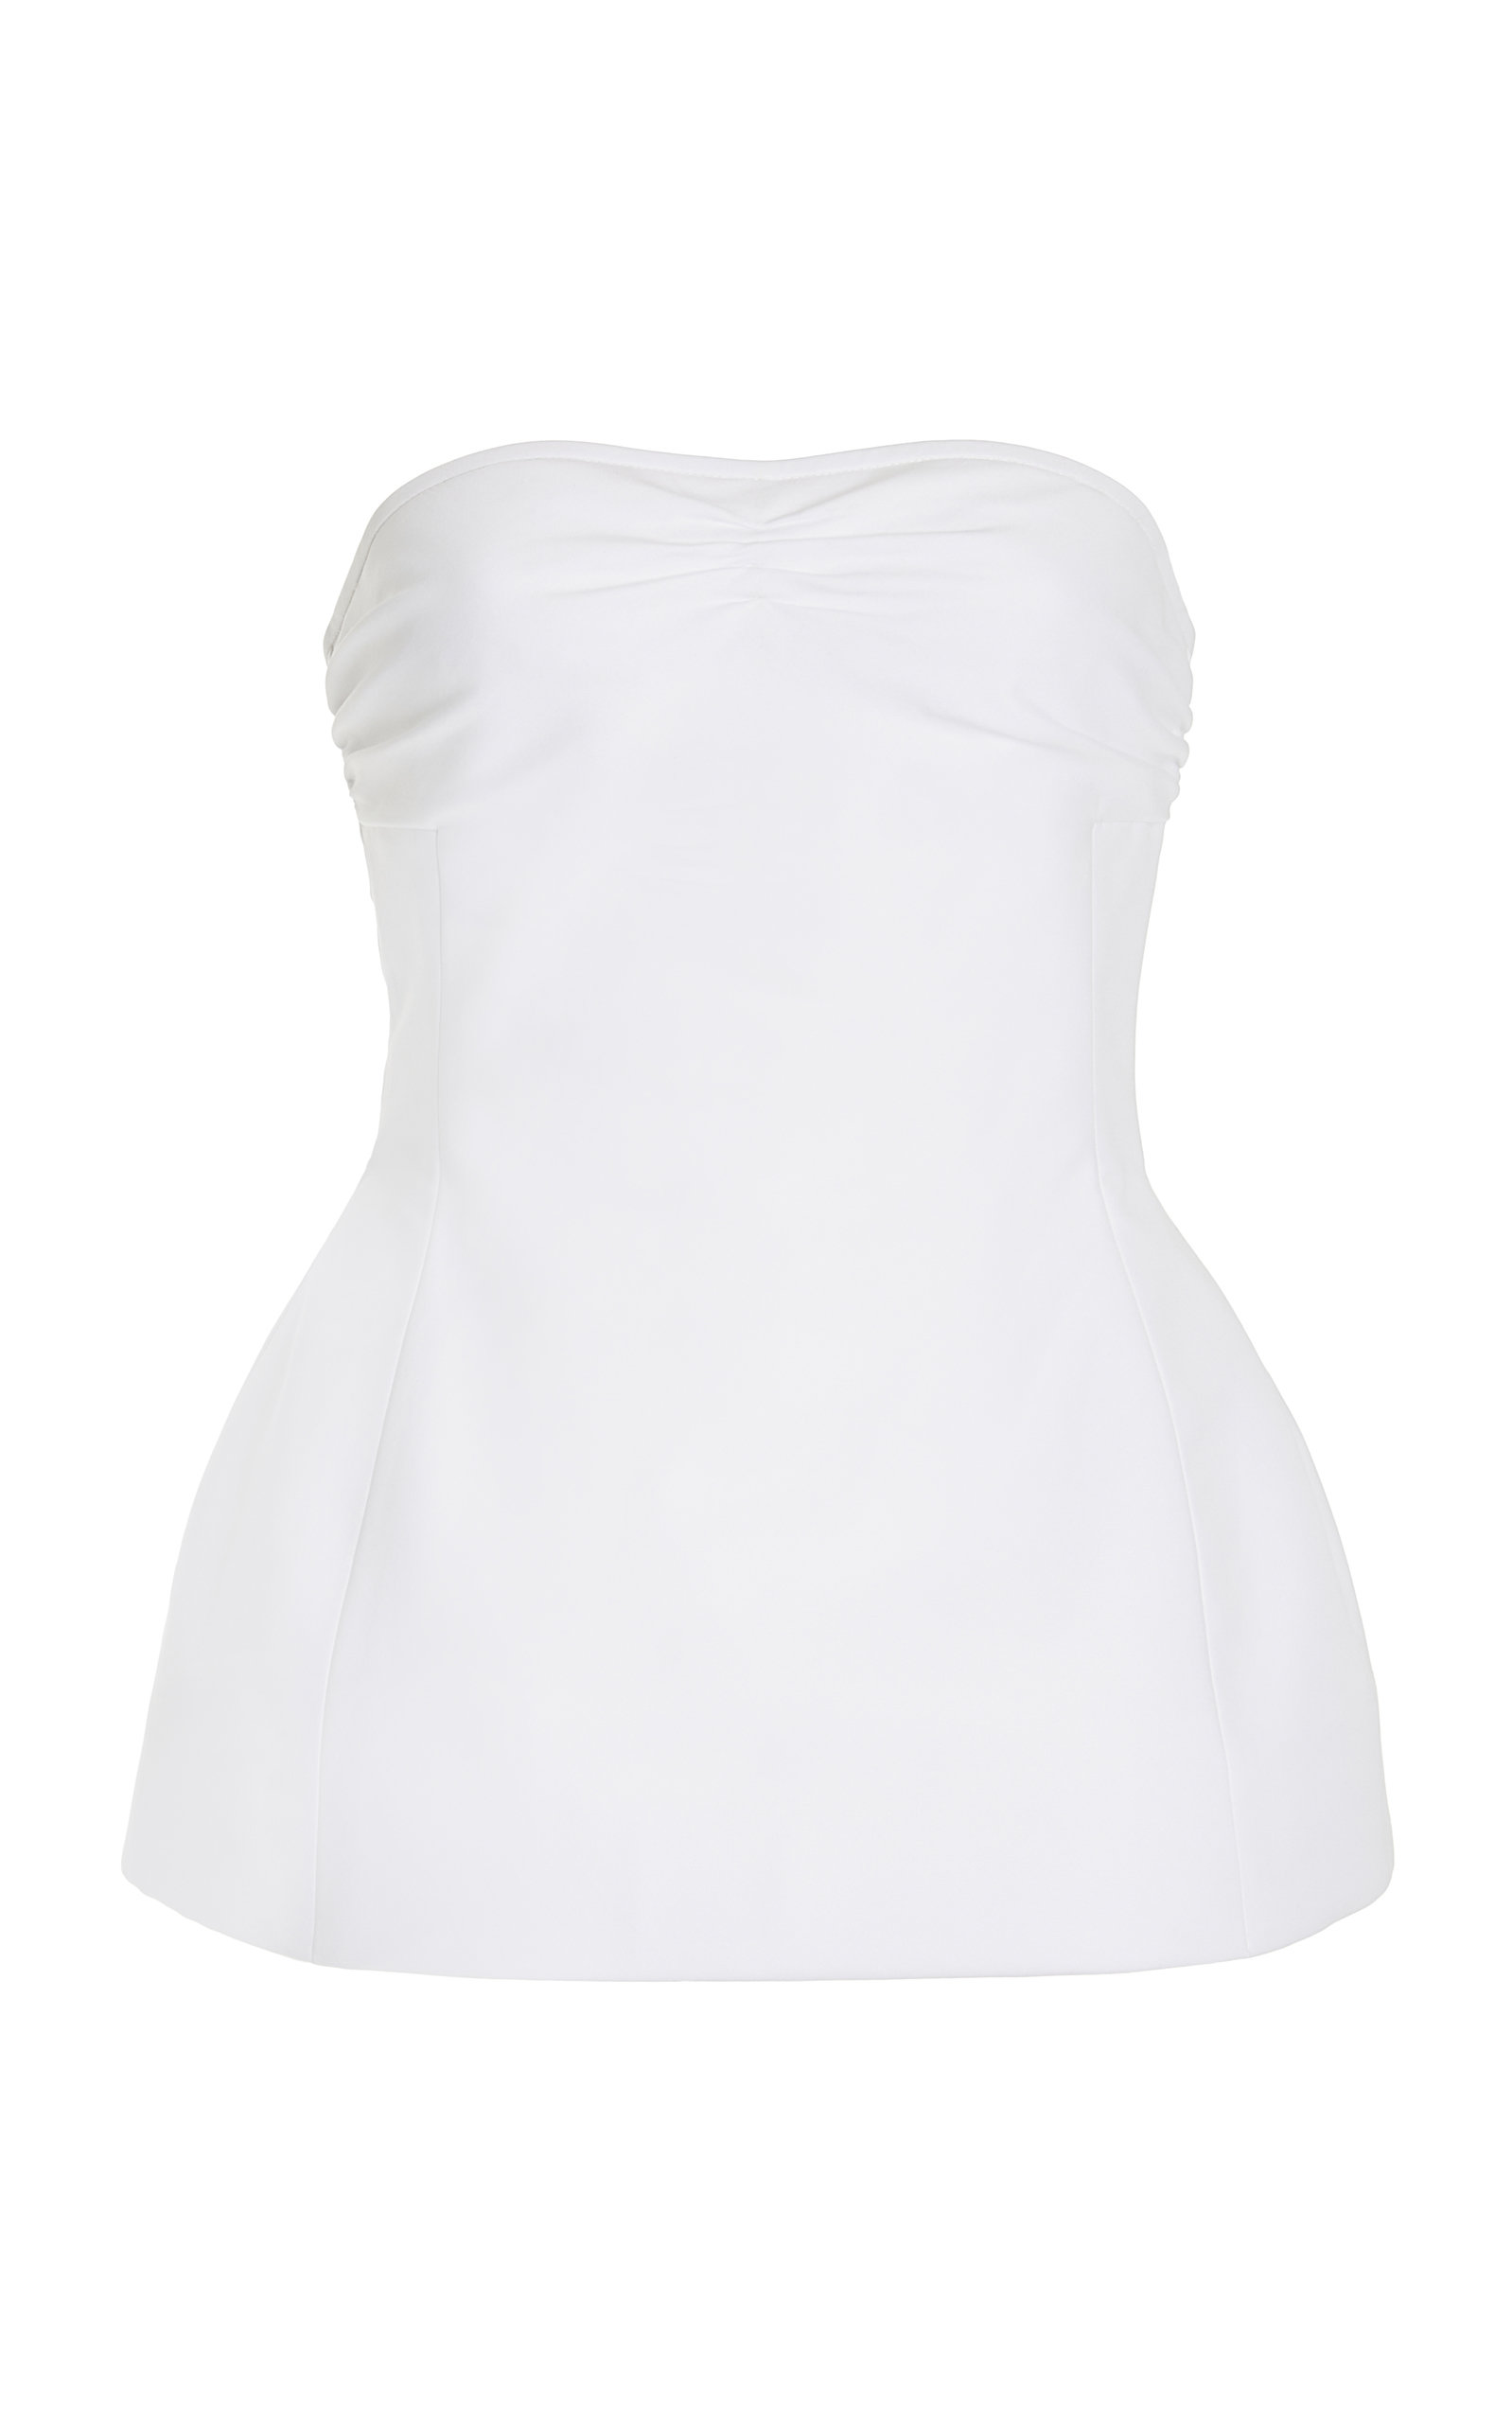 Khaite - Women's Blanche Strapless Cotton Top - White - Moda Operandi